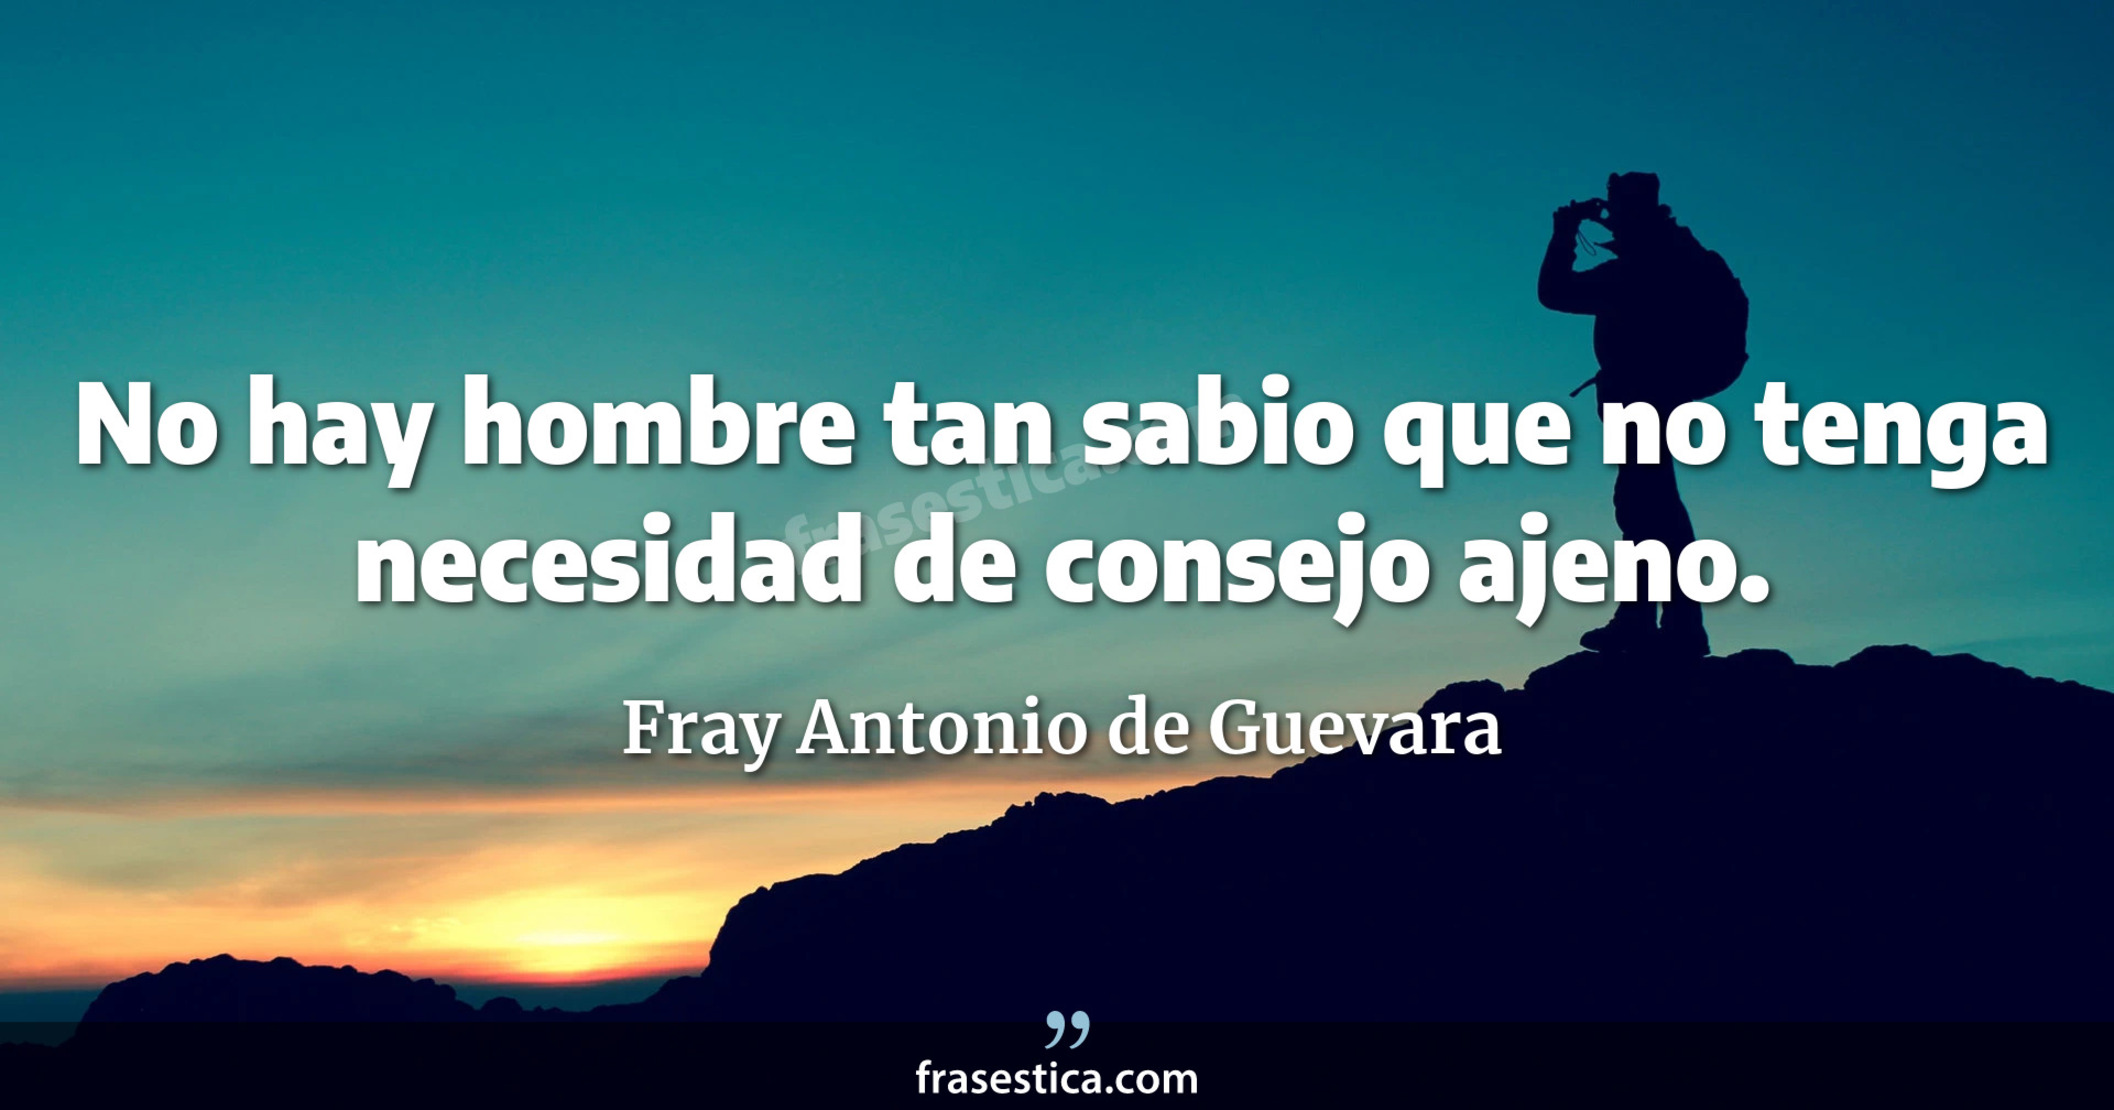 No hay hombre tan sabio que no tenga necesidad de consejo ajeno. - Fray Antonio de Guevara